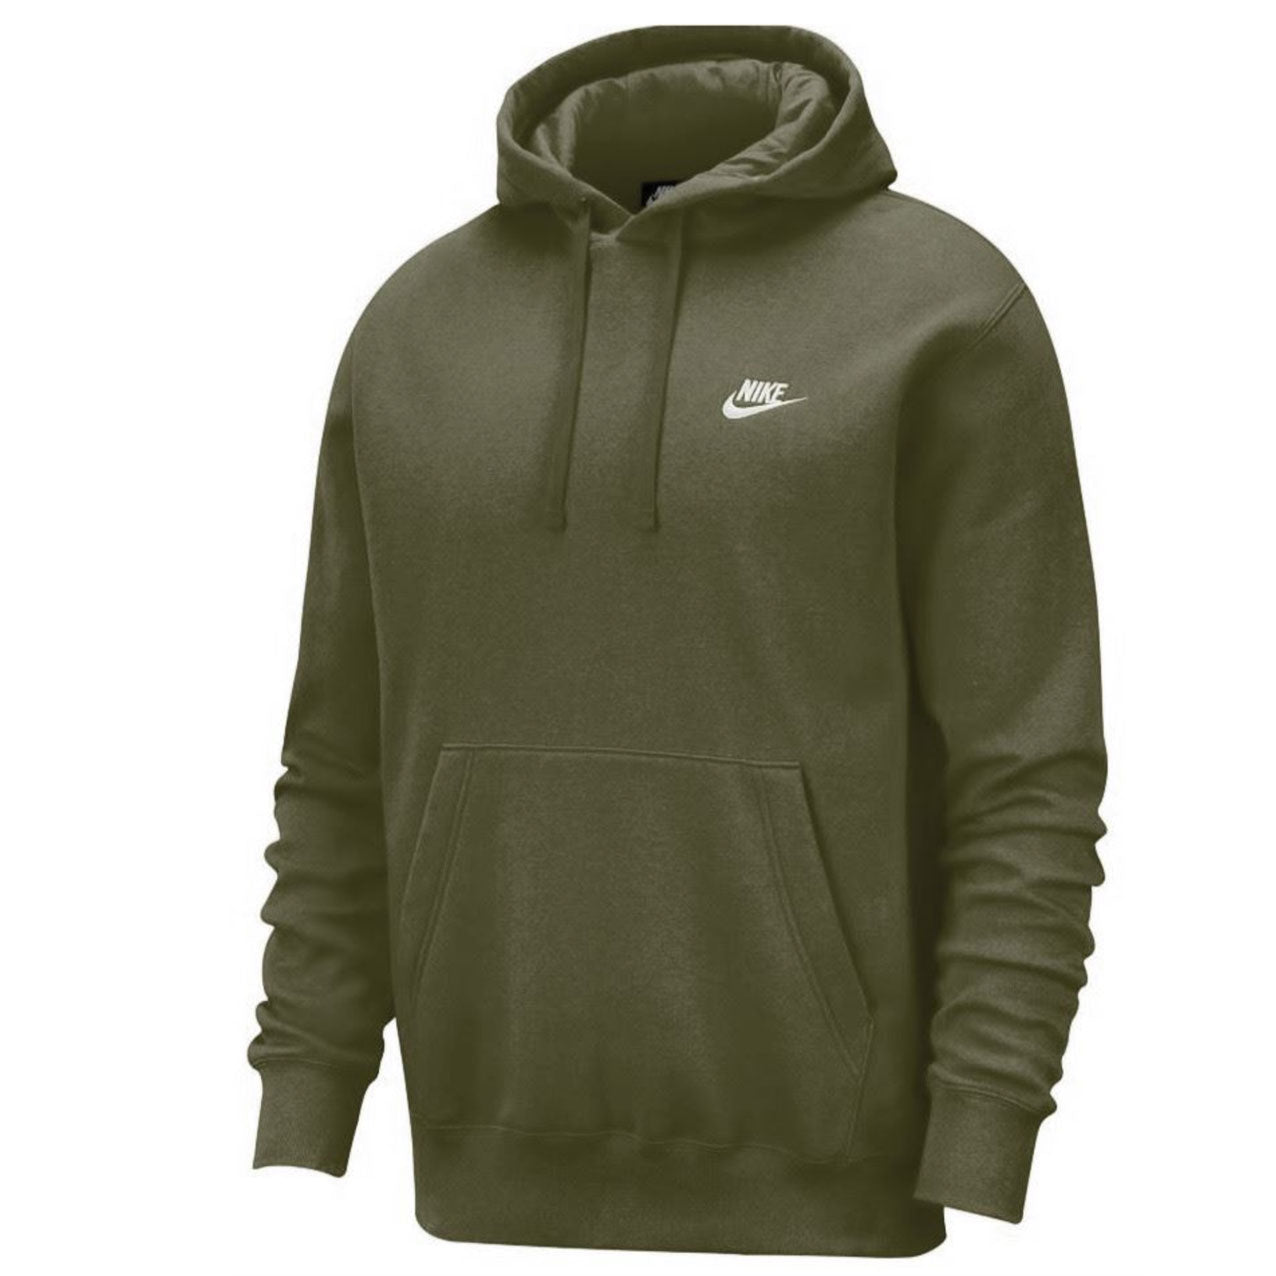 Nike Hoodie Mens Gym Running Top Long Sleeve Pullover Hoodie Green - MRGOUTLETS